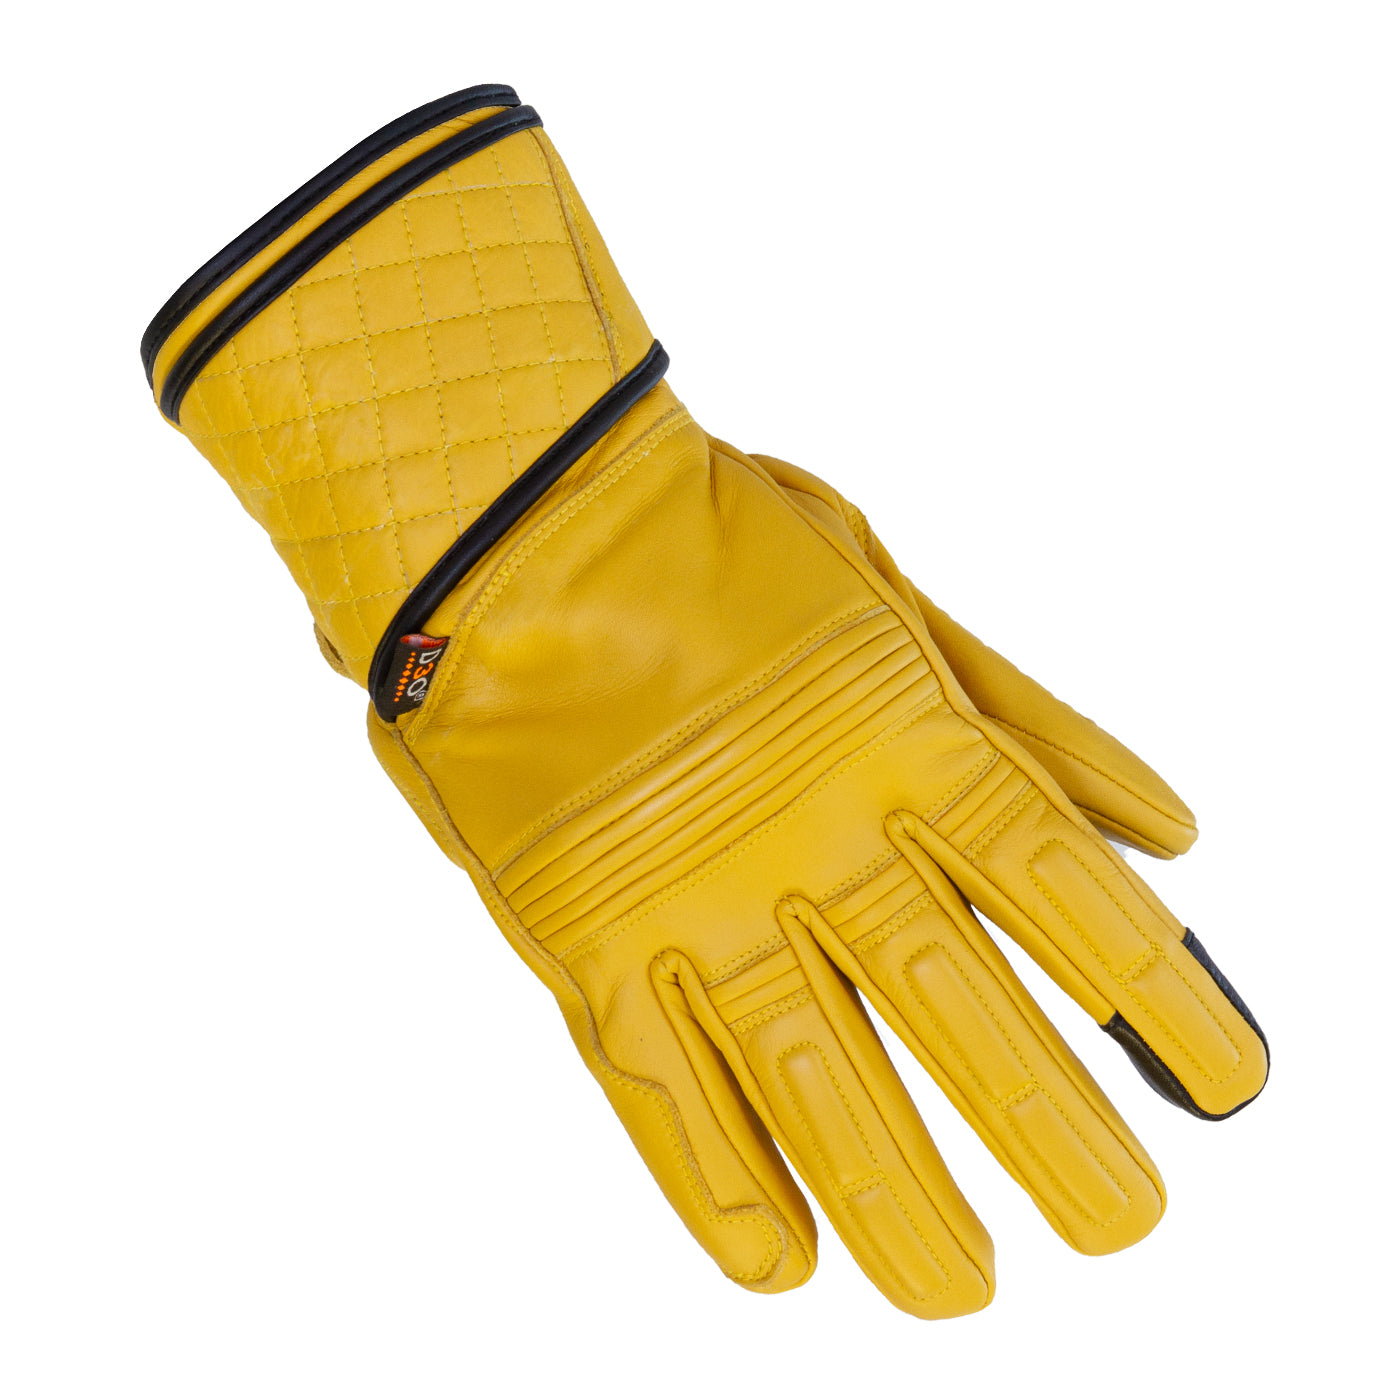 Catton 2.0 Glove